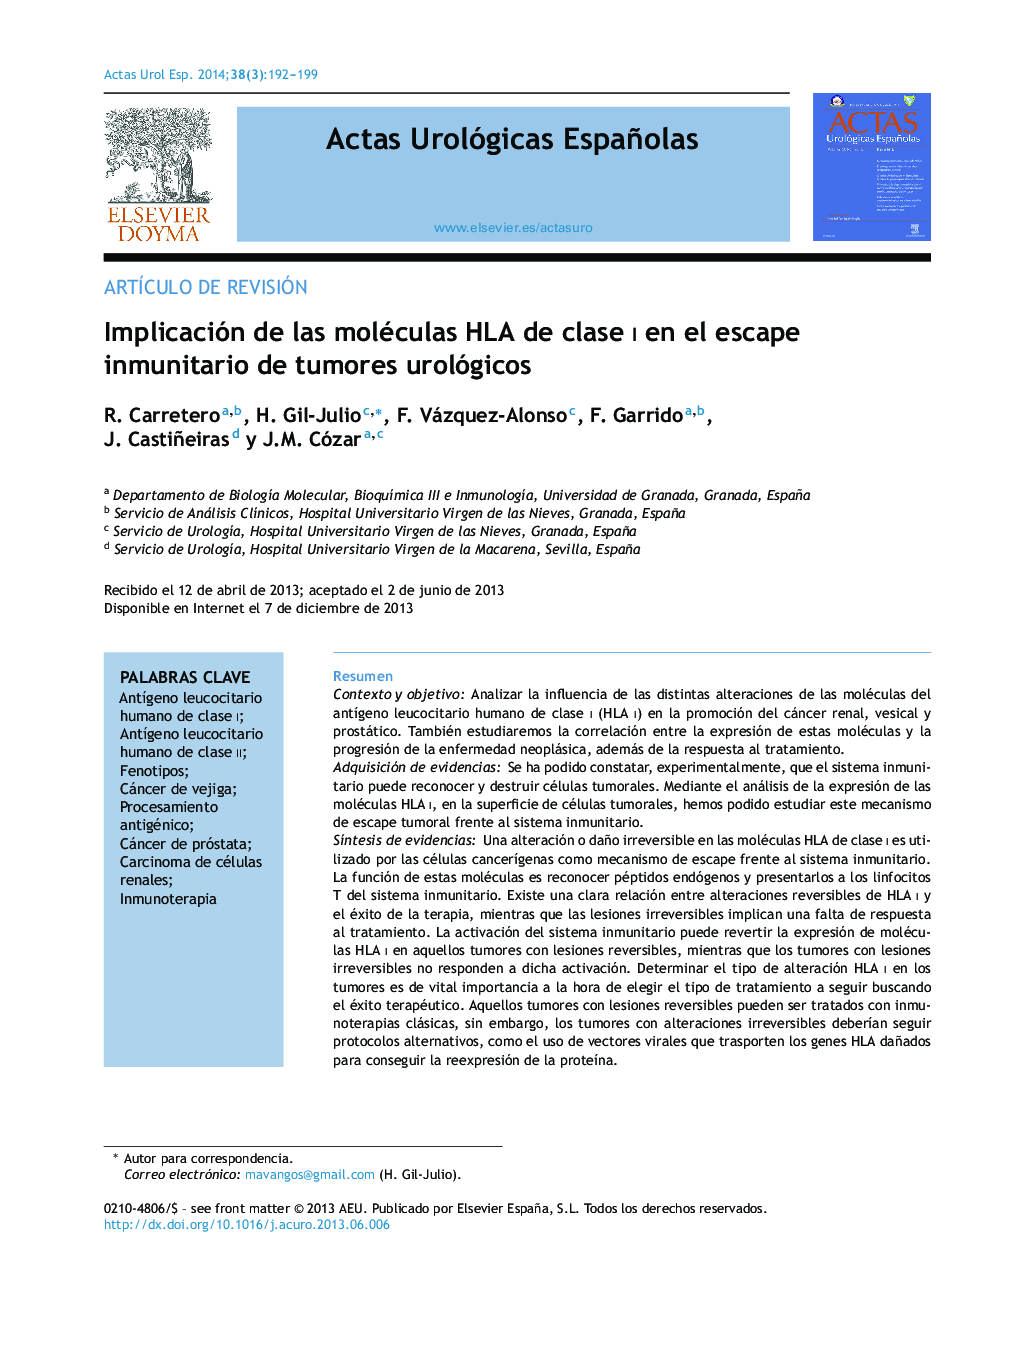 Implicación de las moléculas HLA de clase I en el escape inmunitario de tumores urológicos